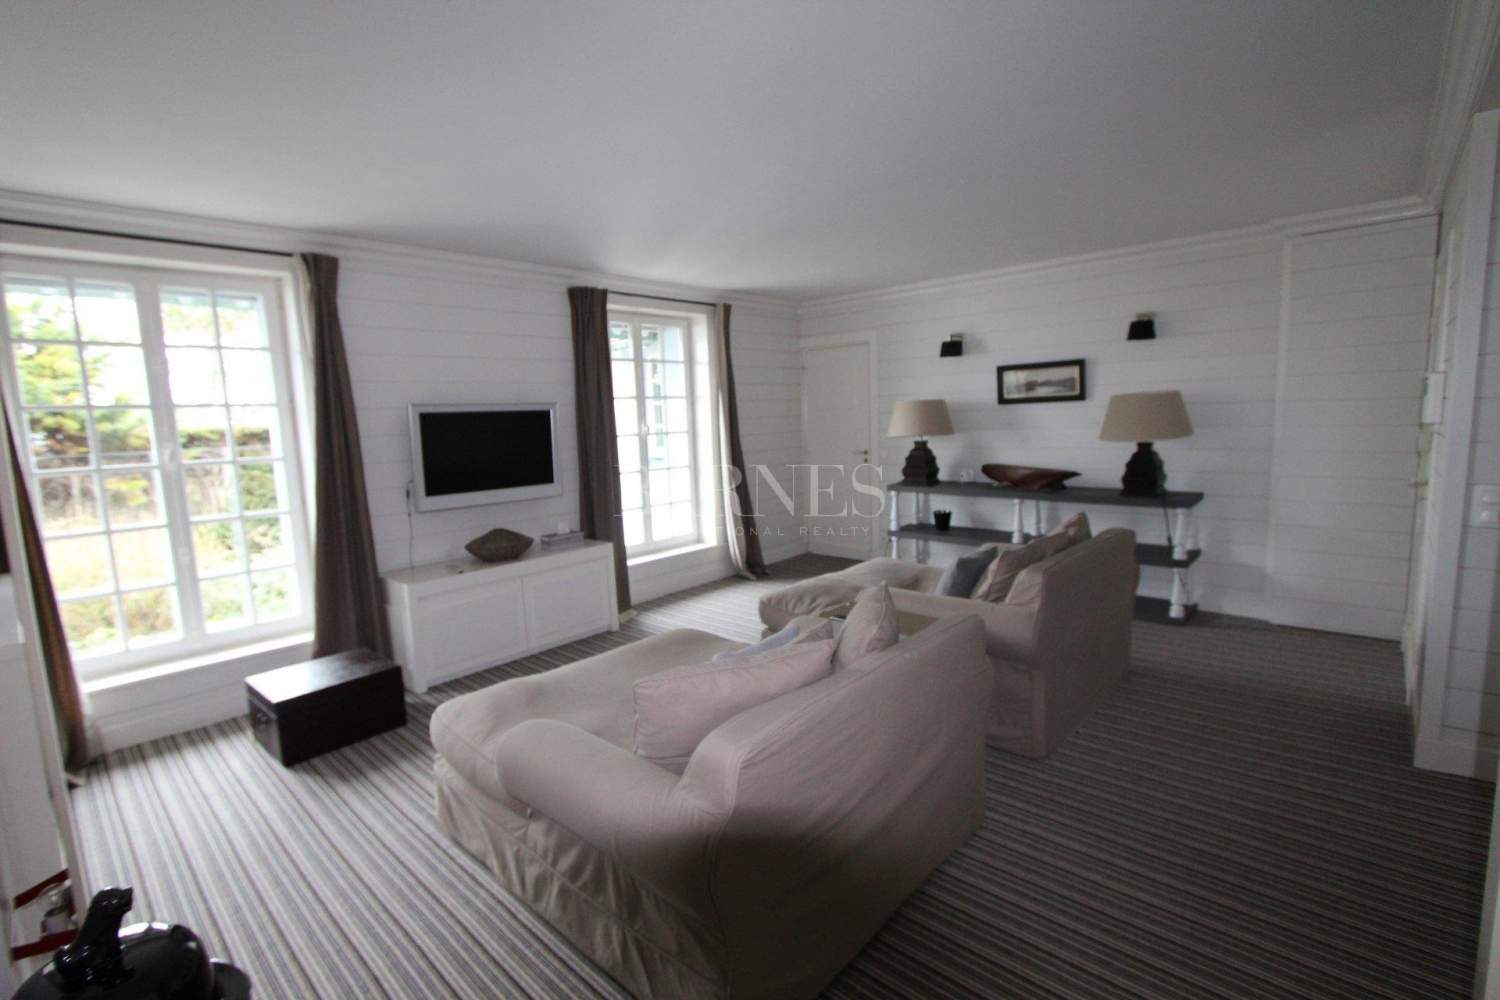 Proche Deauville - Propriété d'exception - 7 chambres - Piscine - accès direct plage picture 18